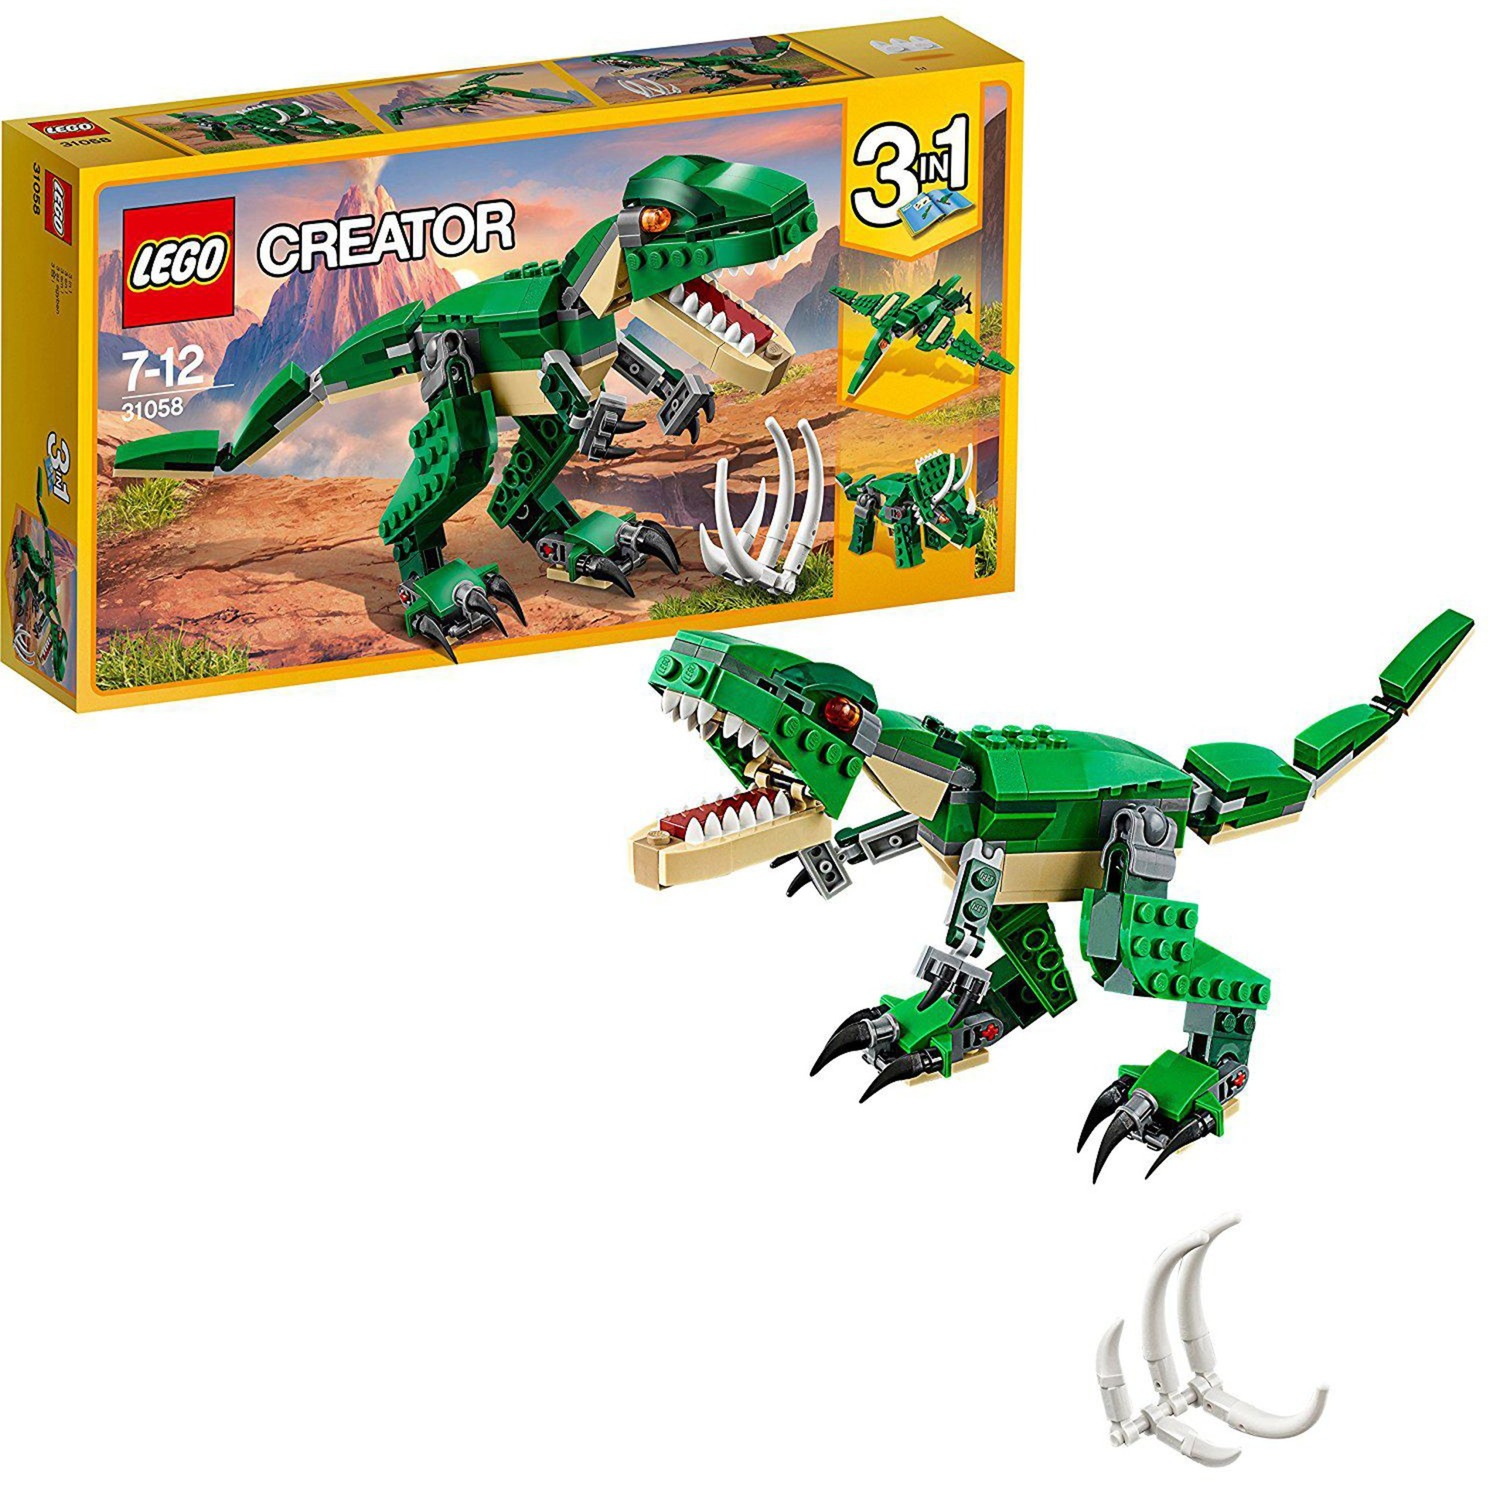 Image of Alternate - 31058 Creator Dinosaurier, Konstruktionsspielzeug online einkaufen bei Alternate